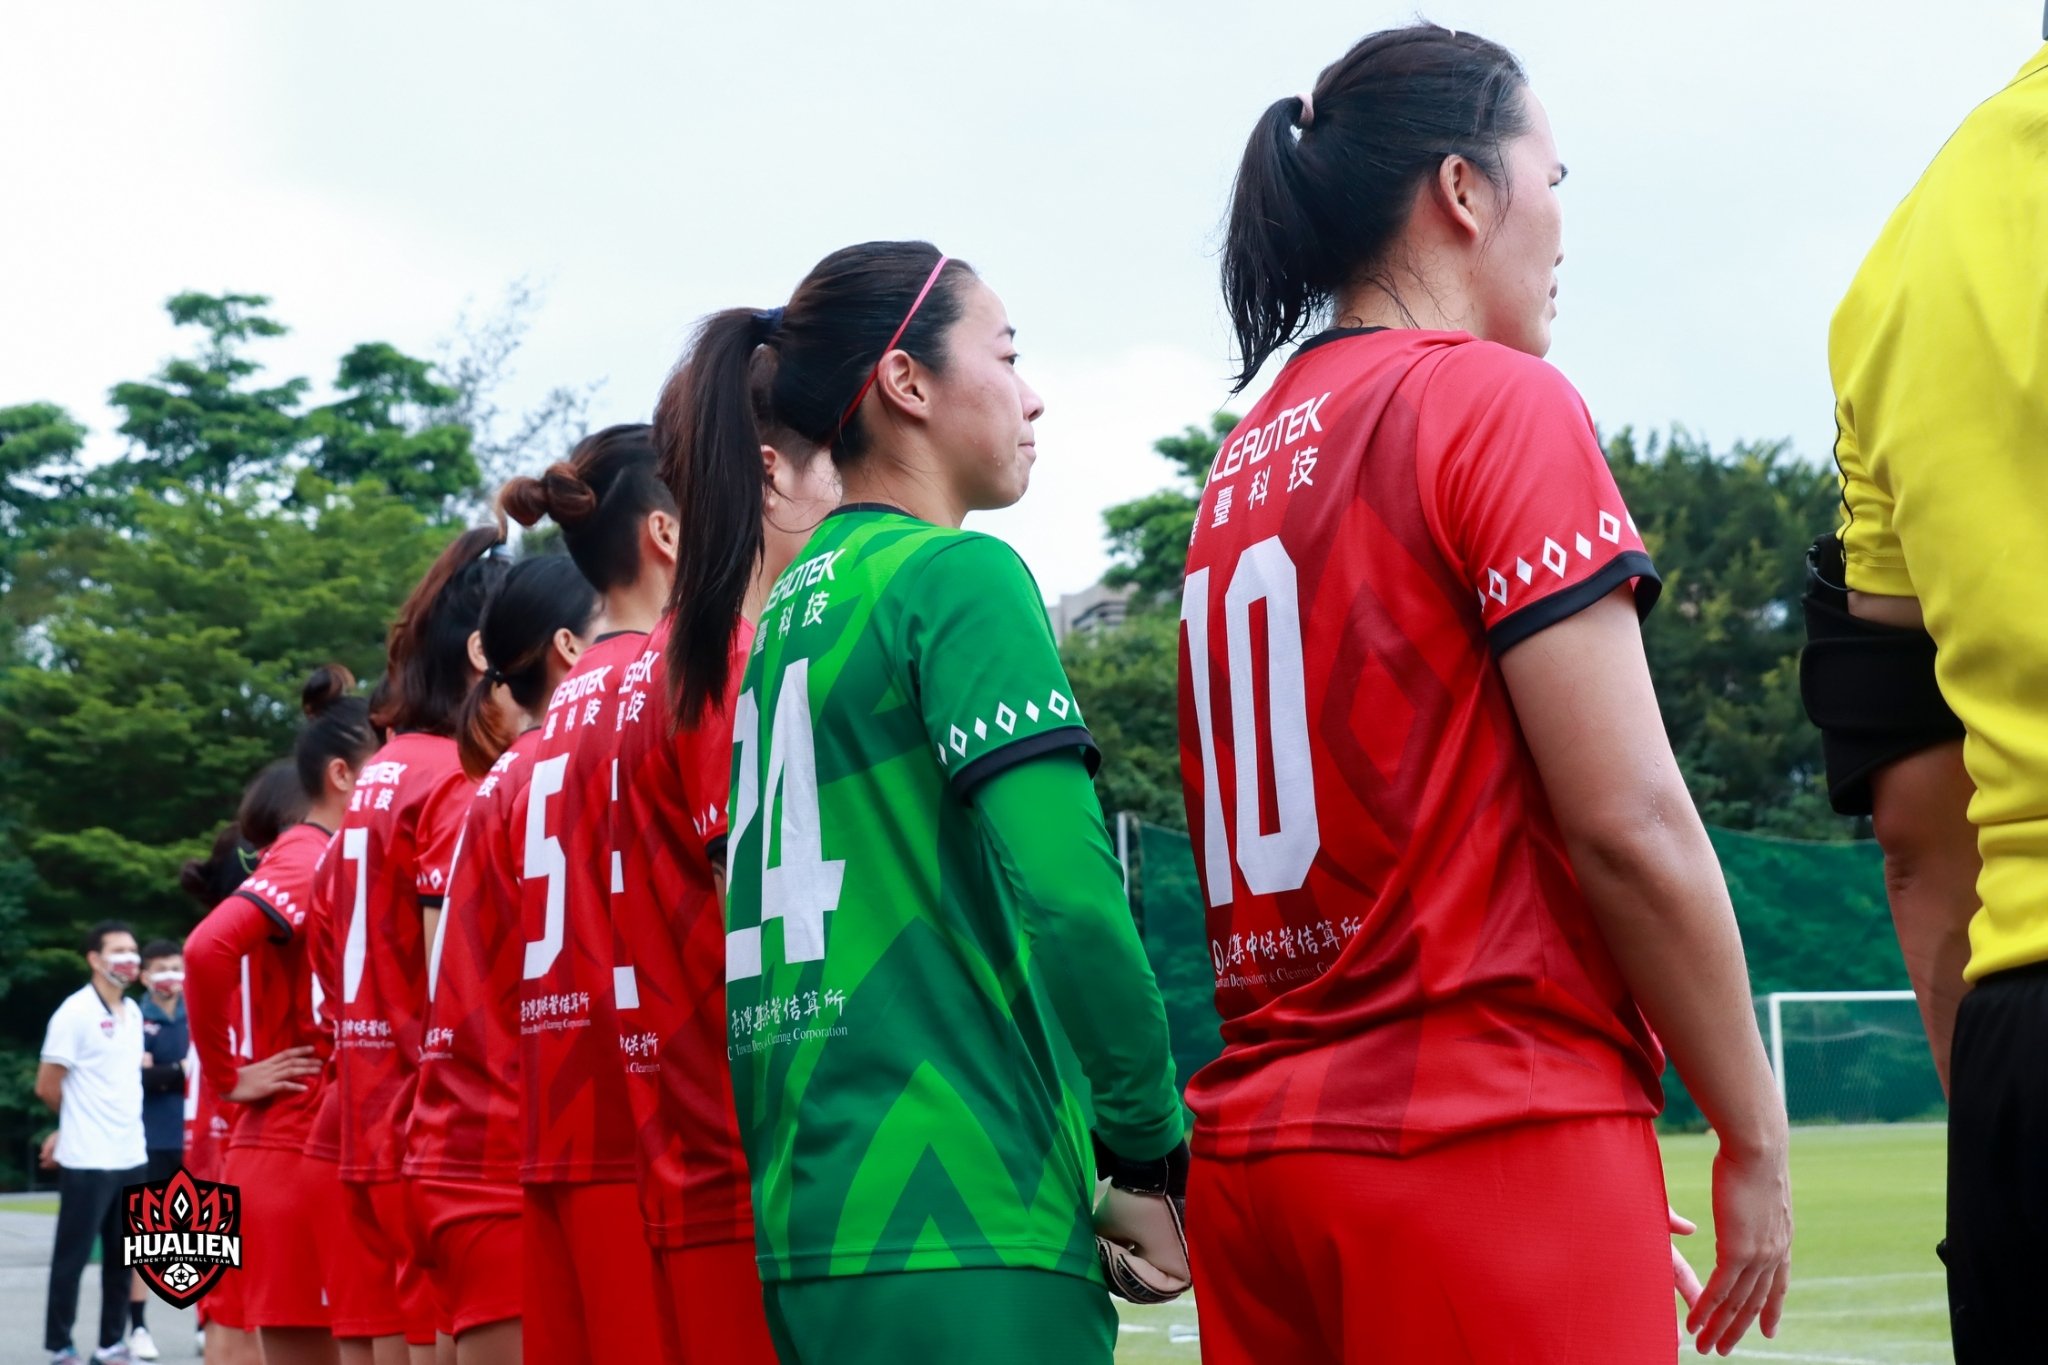 花蓮女子足球隊的球員身分絕大多數都是來自花蓮當地的原住民。花蓮女足提供